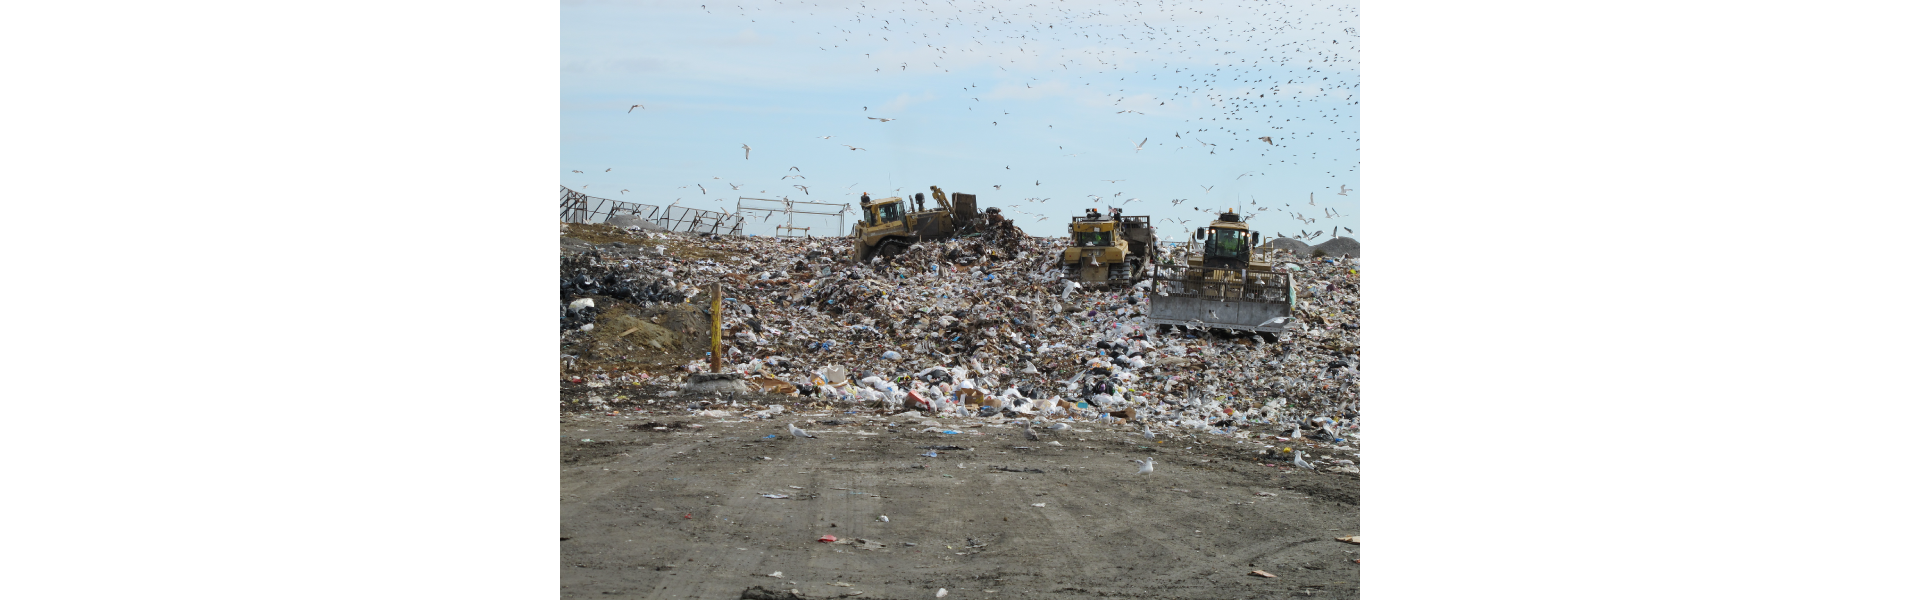 Ilustracja przedstawia składowisko odpadów.